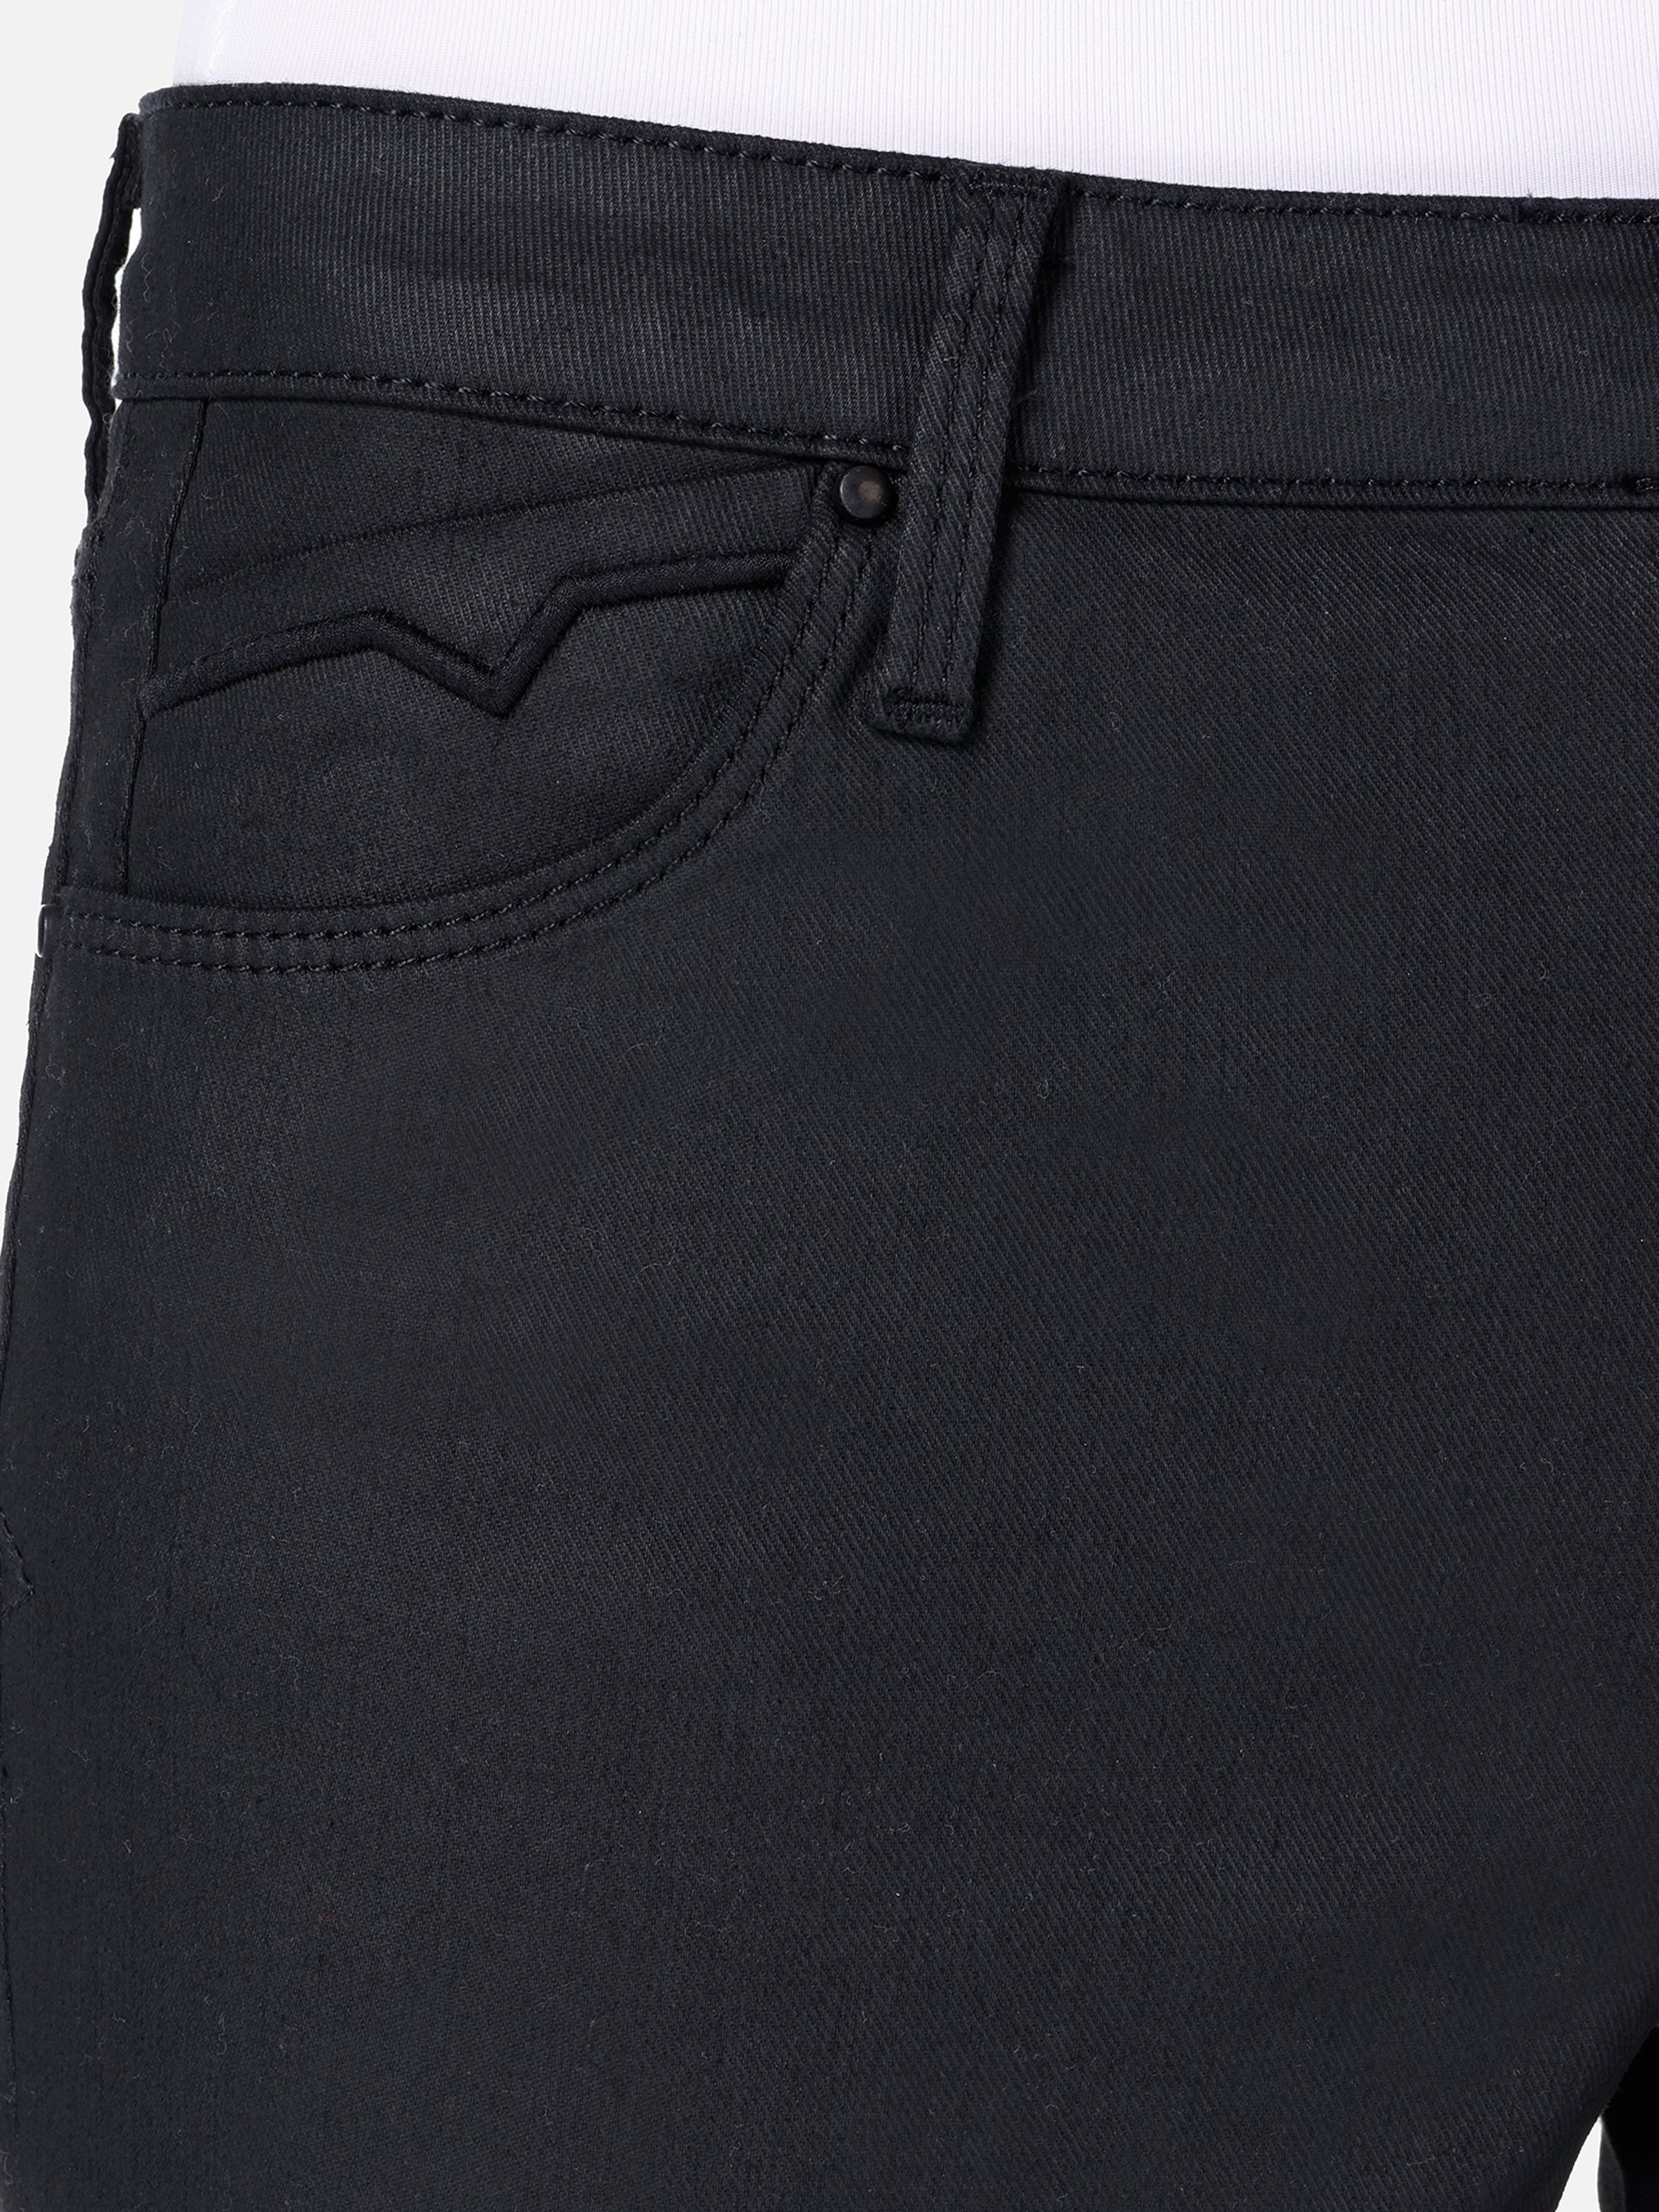 Afișați detalii pentru Pantaloni De Dama Negru Skinny Fit 759 LARA 